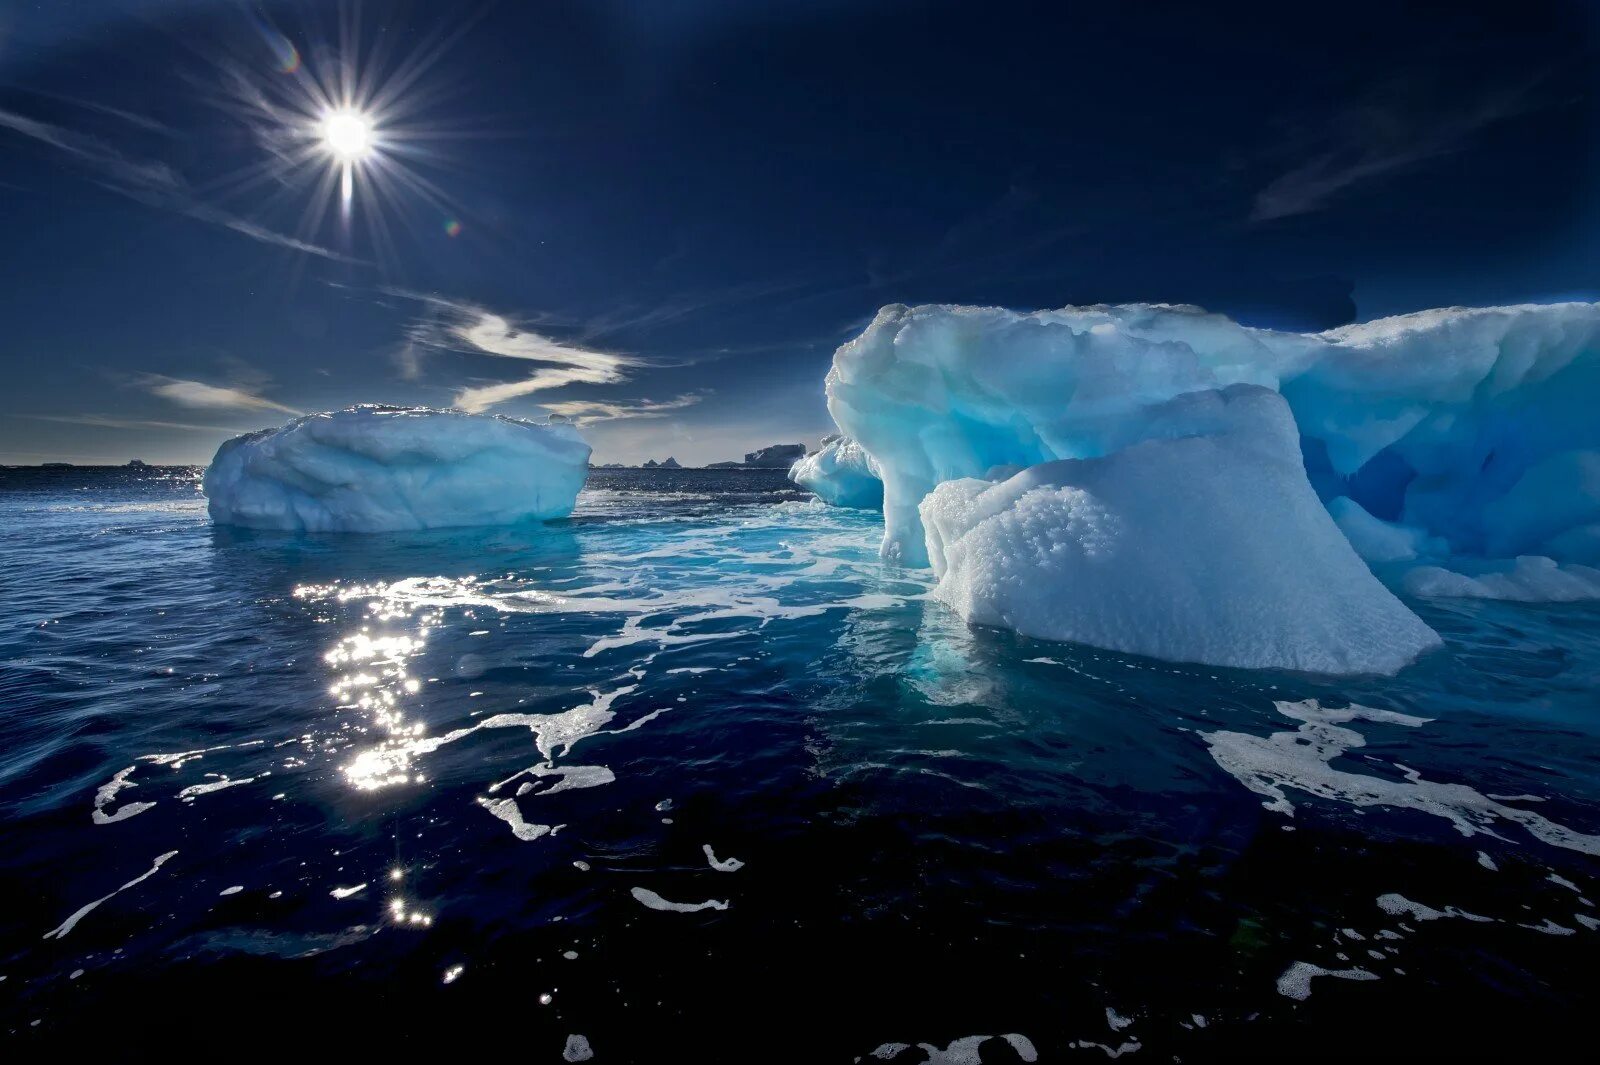 Куски льда в океане. Арктика Северный Ледовитый океан. Море Амундсена в Антарктиде. Море Росса Антарктида. Северный Ледовитый океан Южный полюс.